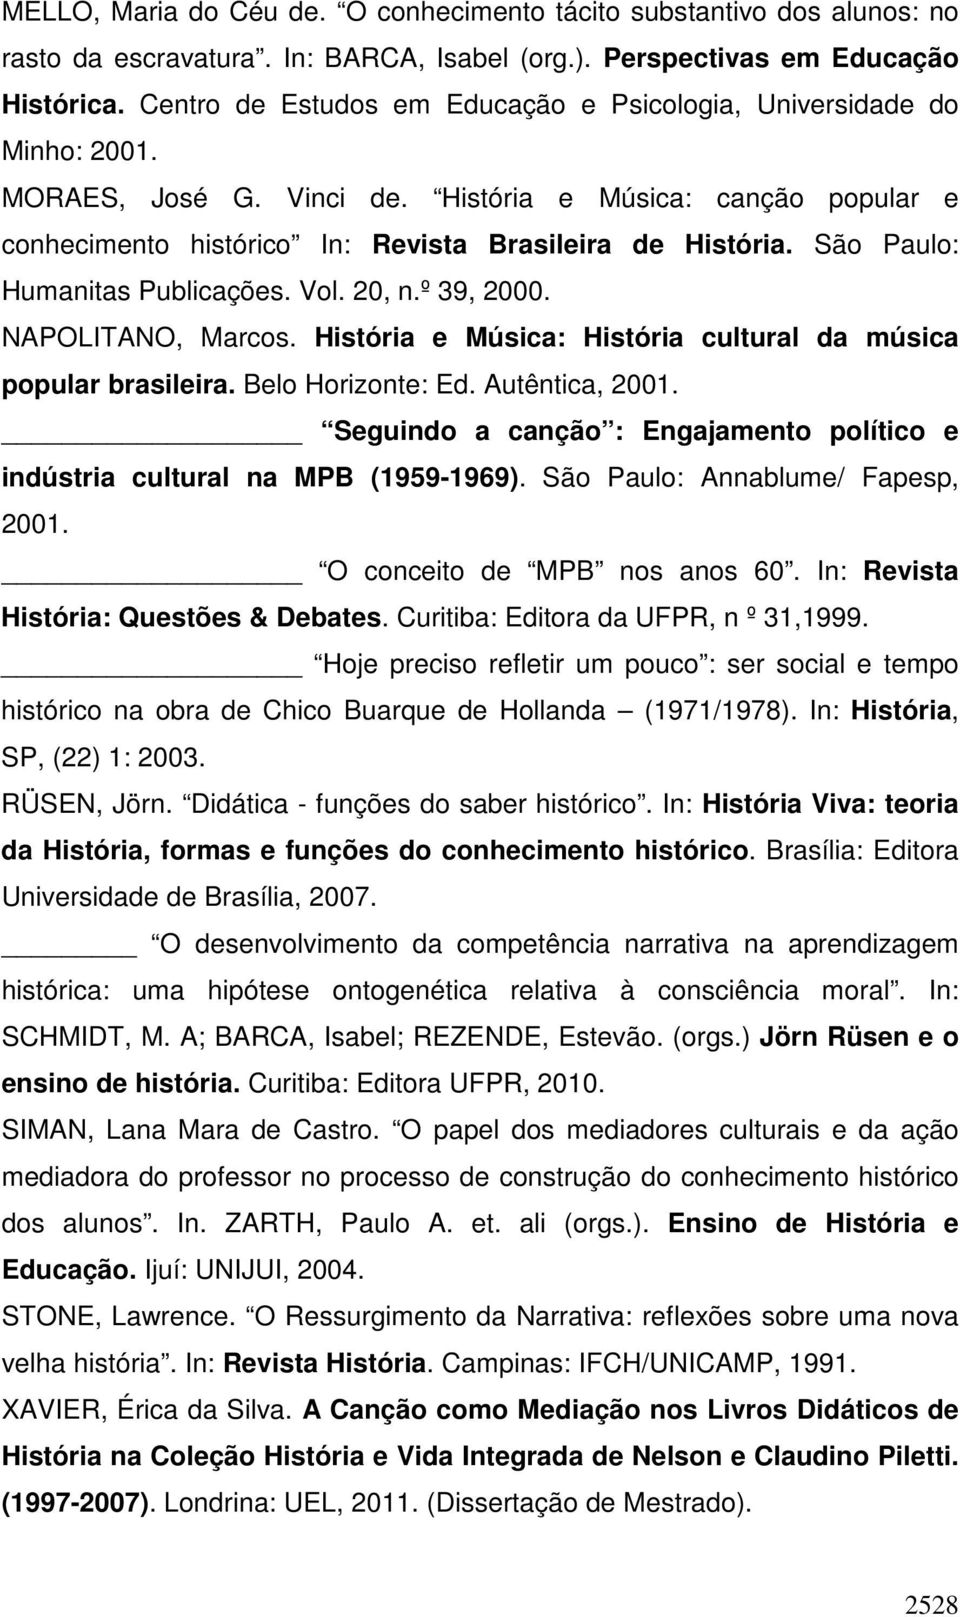 São Paulo: Humanitas Publicações. Vol. 20, n.º 39, 2000. NAPOLITANO, Marcos. História e Música: História cultural da música popular brasileira. Belo Horizonte: Ed. Autêntica, 2001.